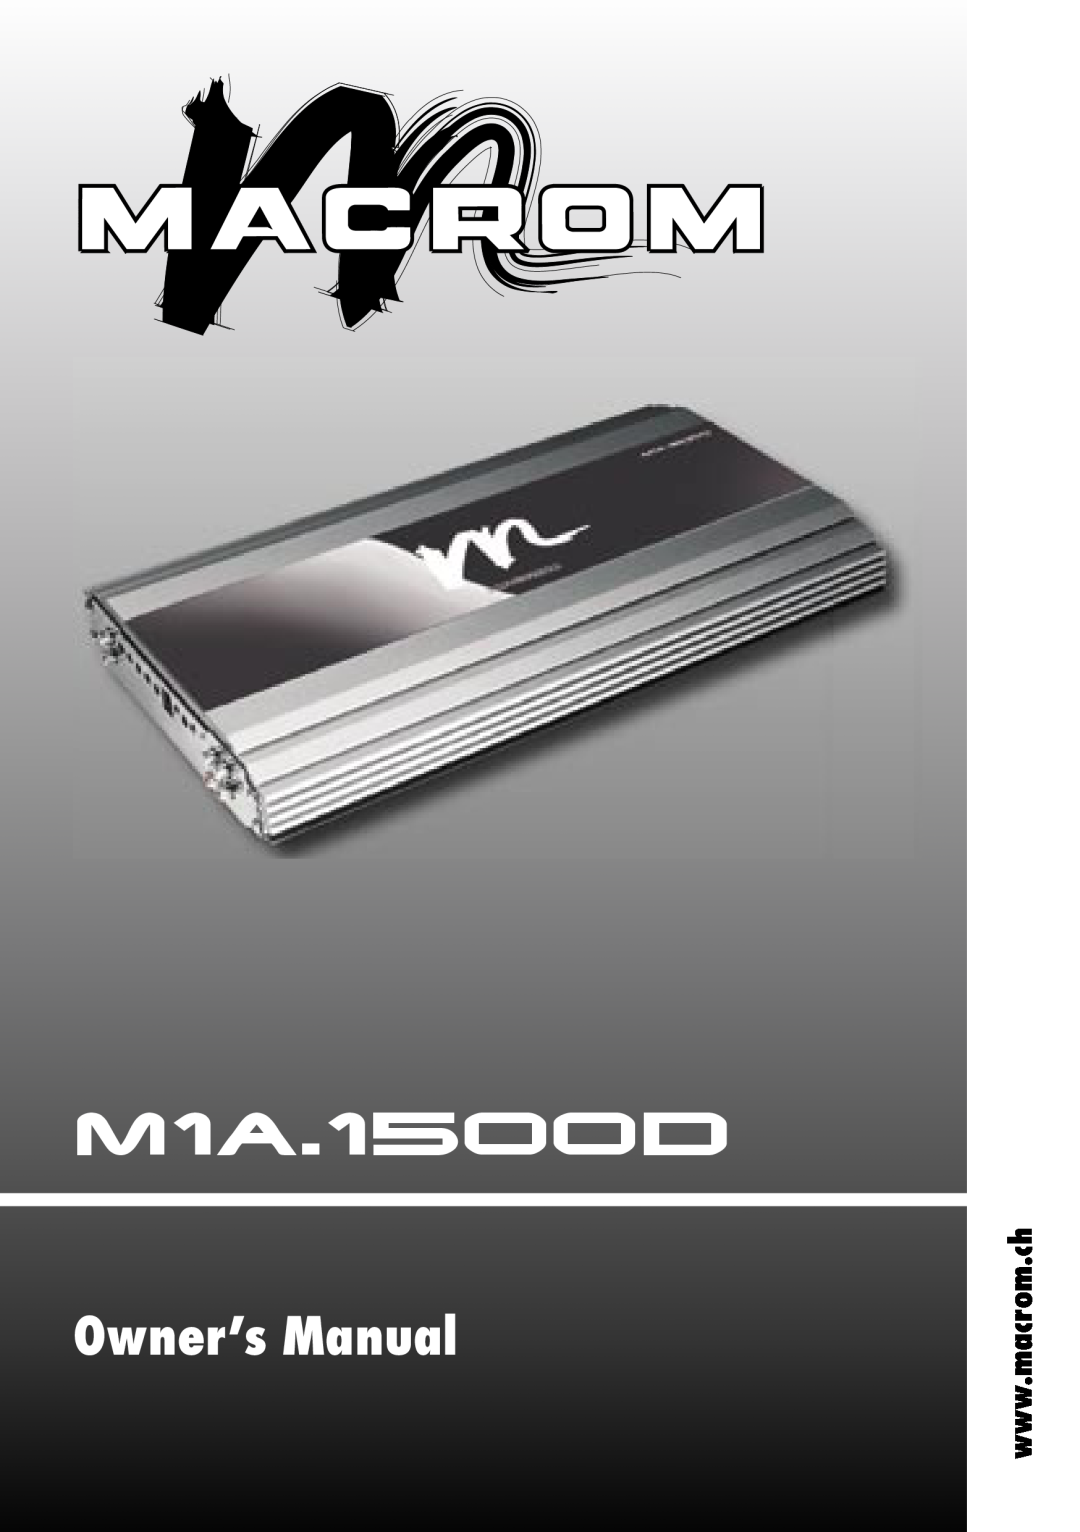 Macrom M1A.1500D owner manual 